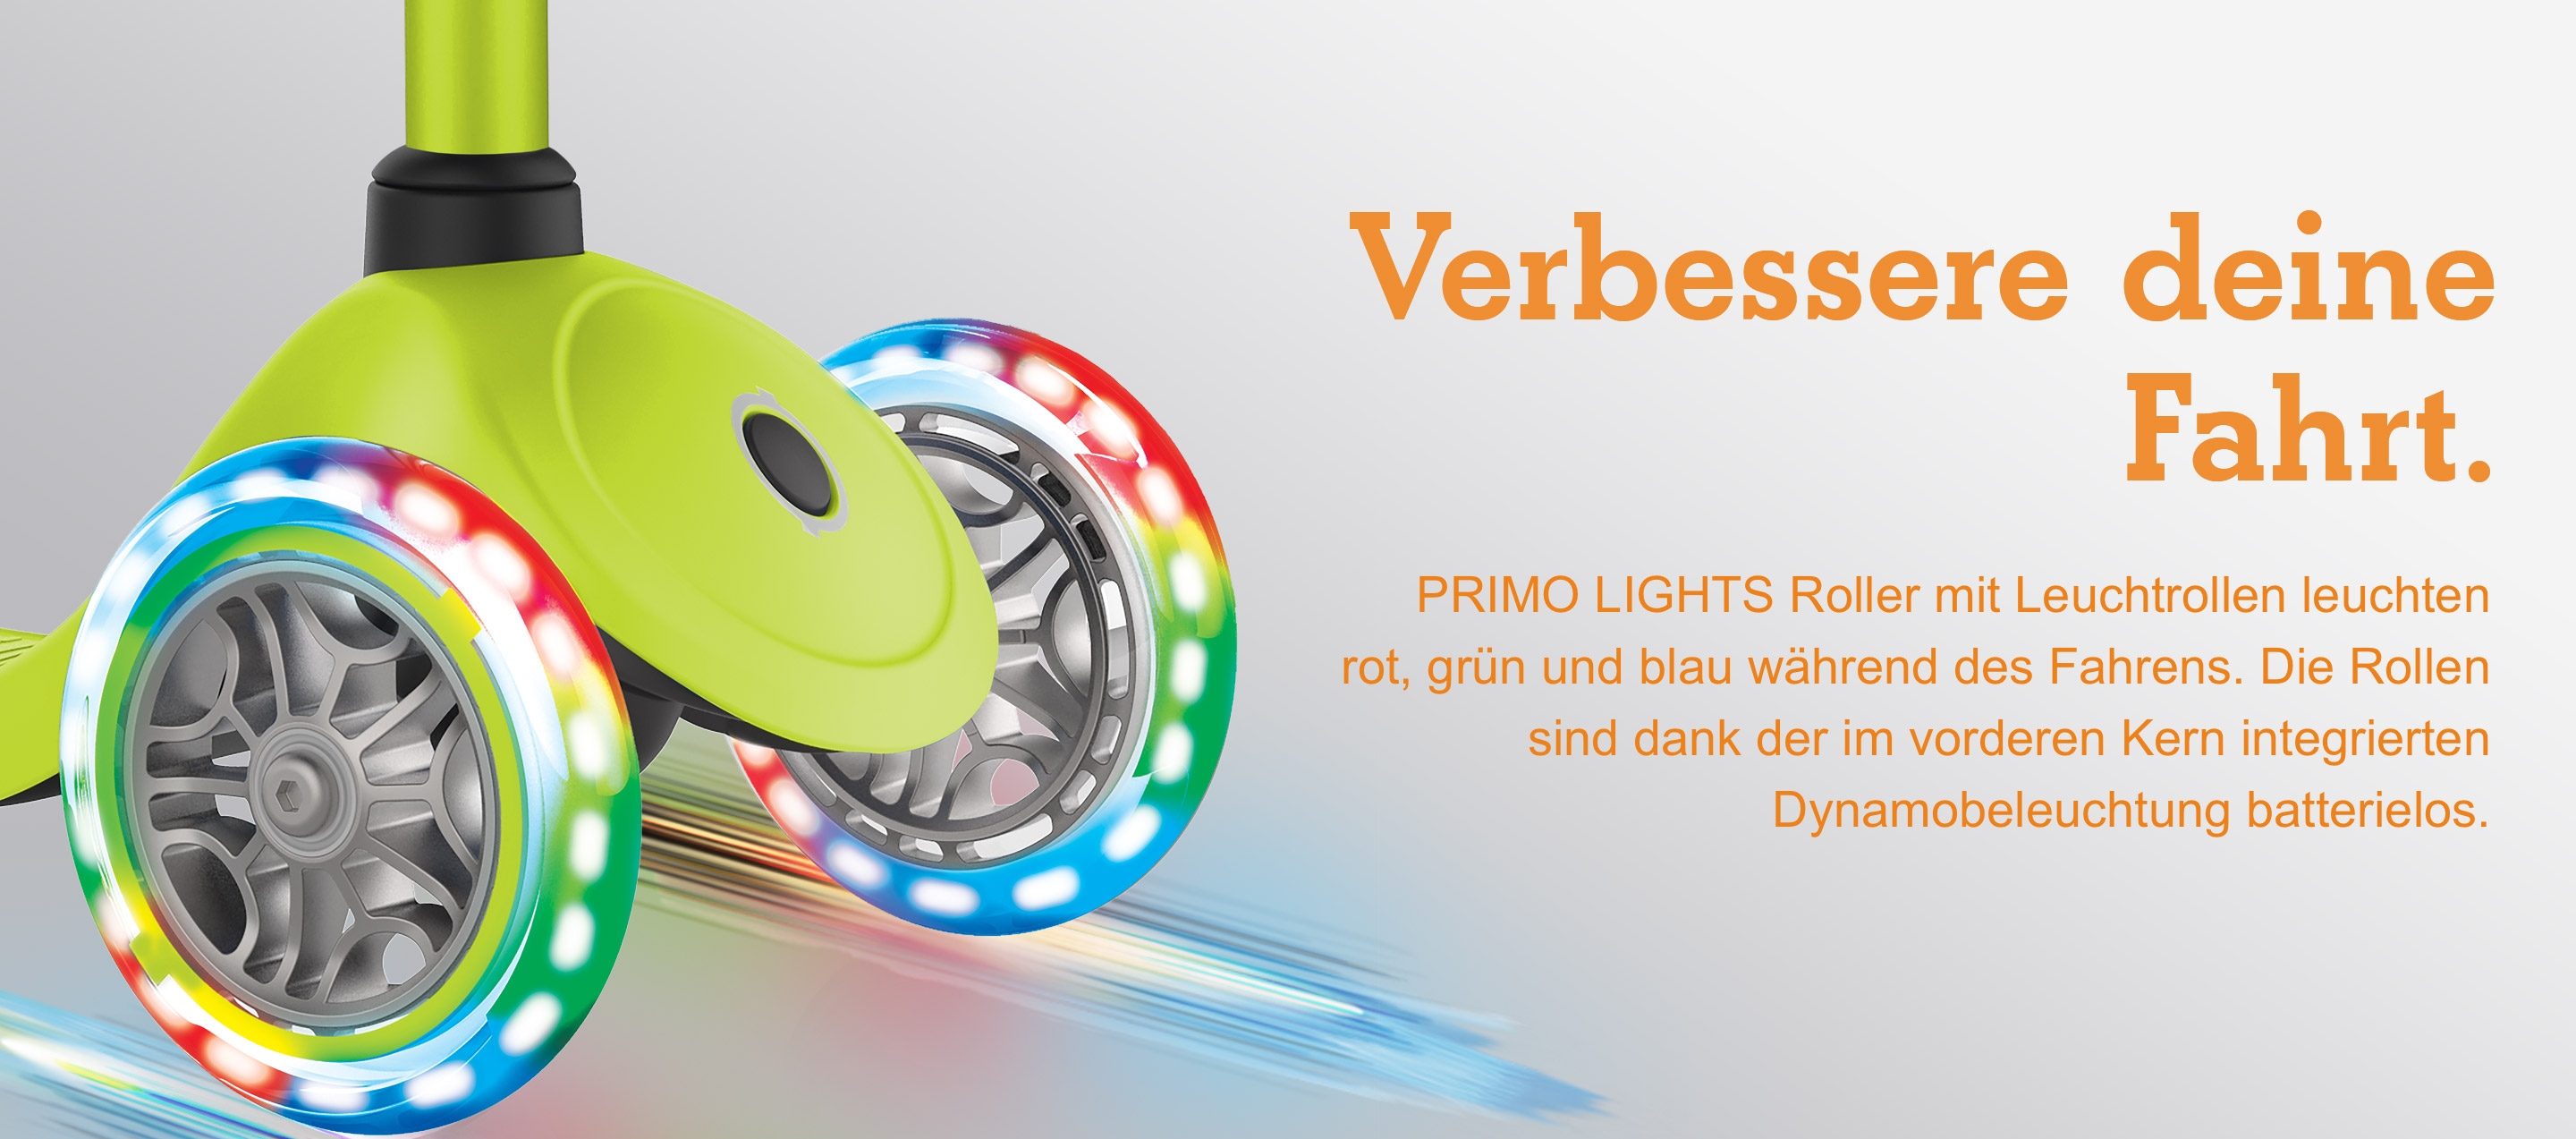 Verbessere deine Fahrt. PRIMO LIGHTS Roller mit Leuchtrollen leuchten rot, grün und blau während des Fahrens. Die Rollen sind dank der im vorderen Kern integrierten Dynamobeleuchtung batterielos.